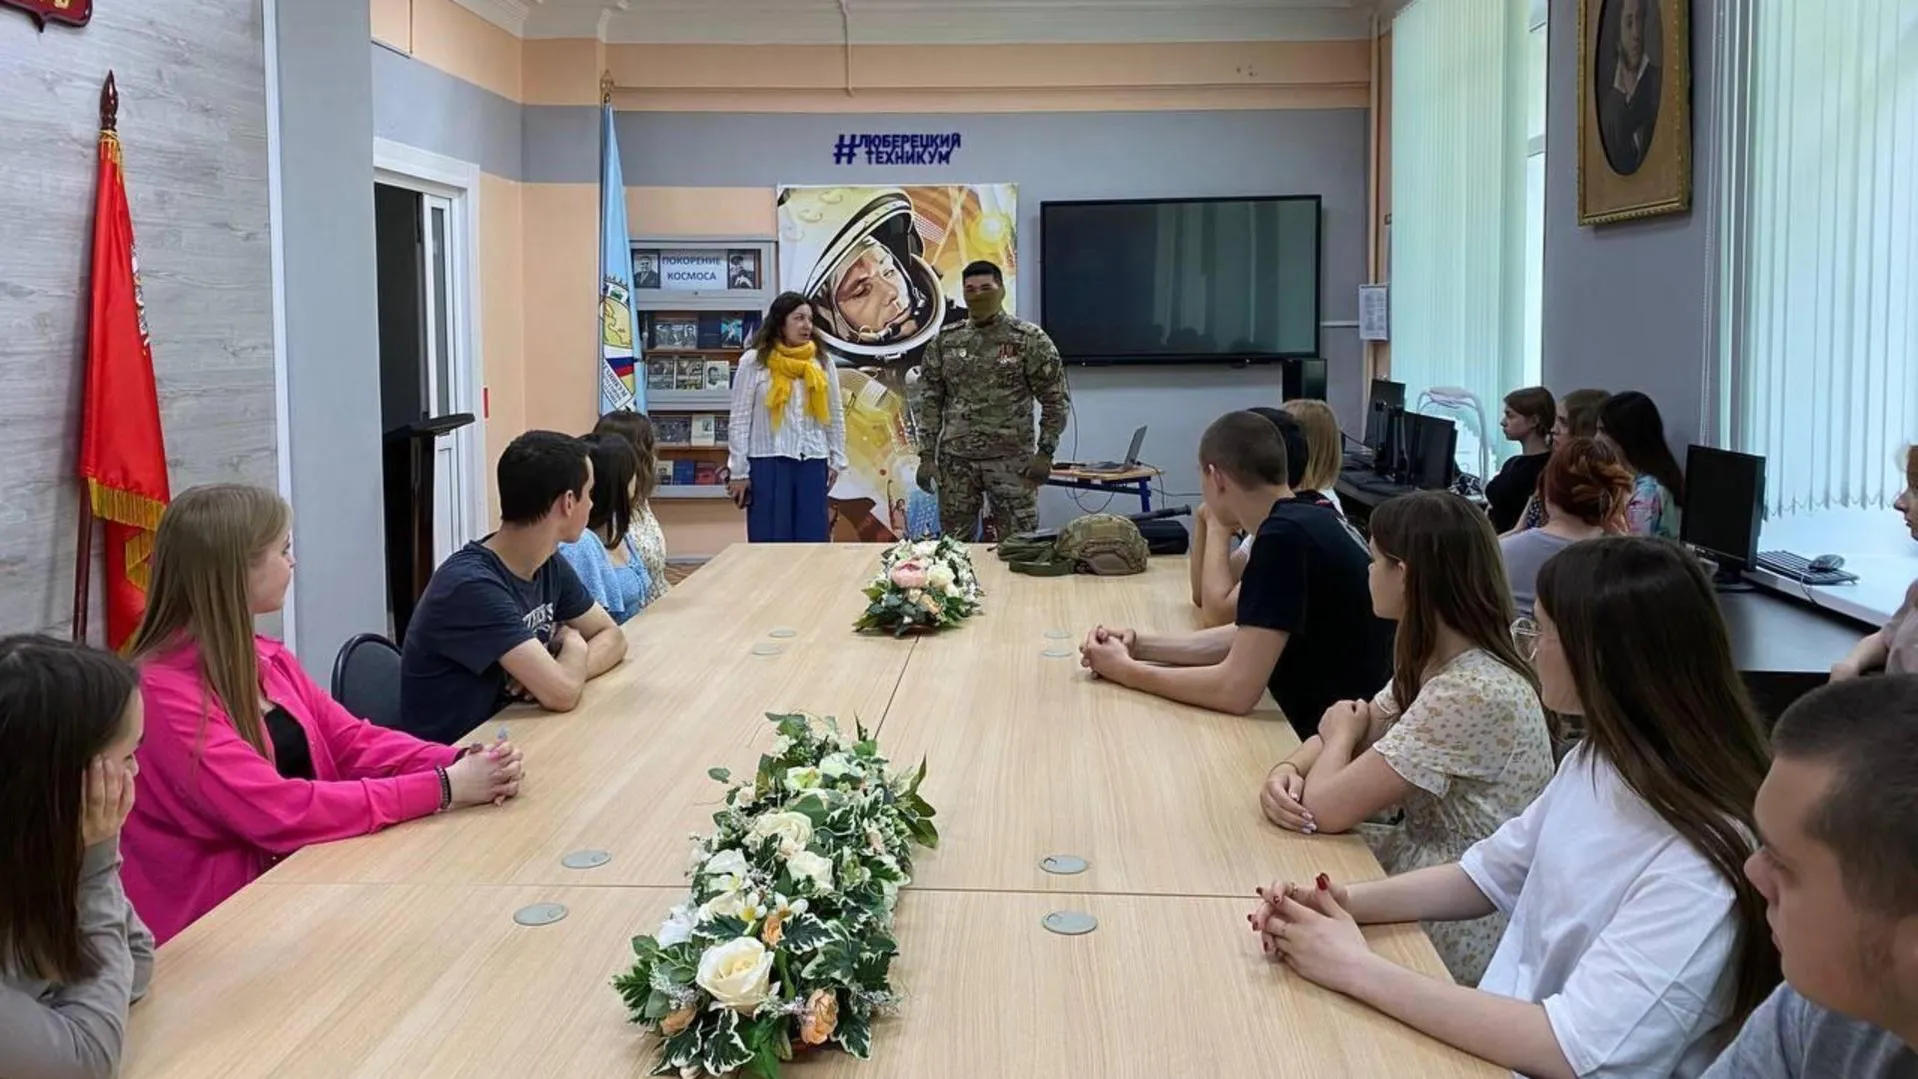 Встреча студентов с участником специальной военной операции состоялась в Люберецком техникуме